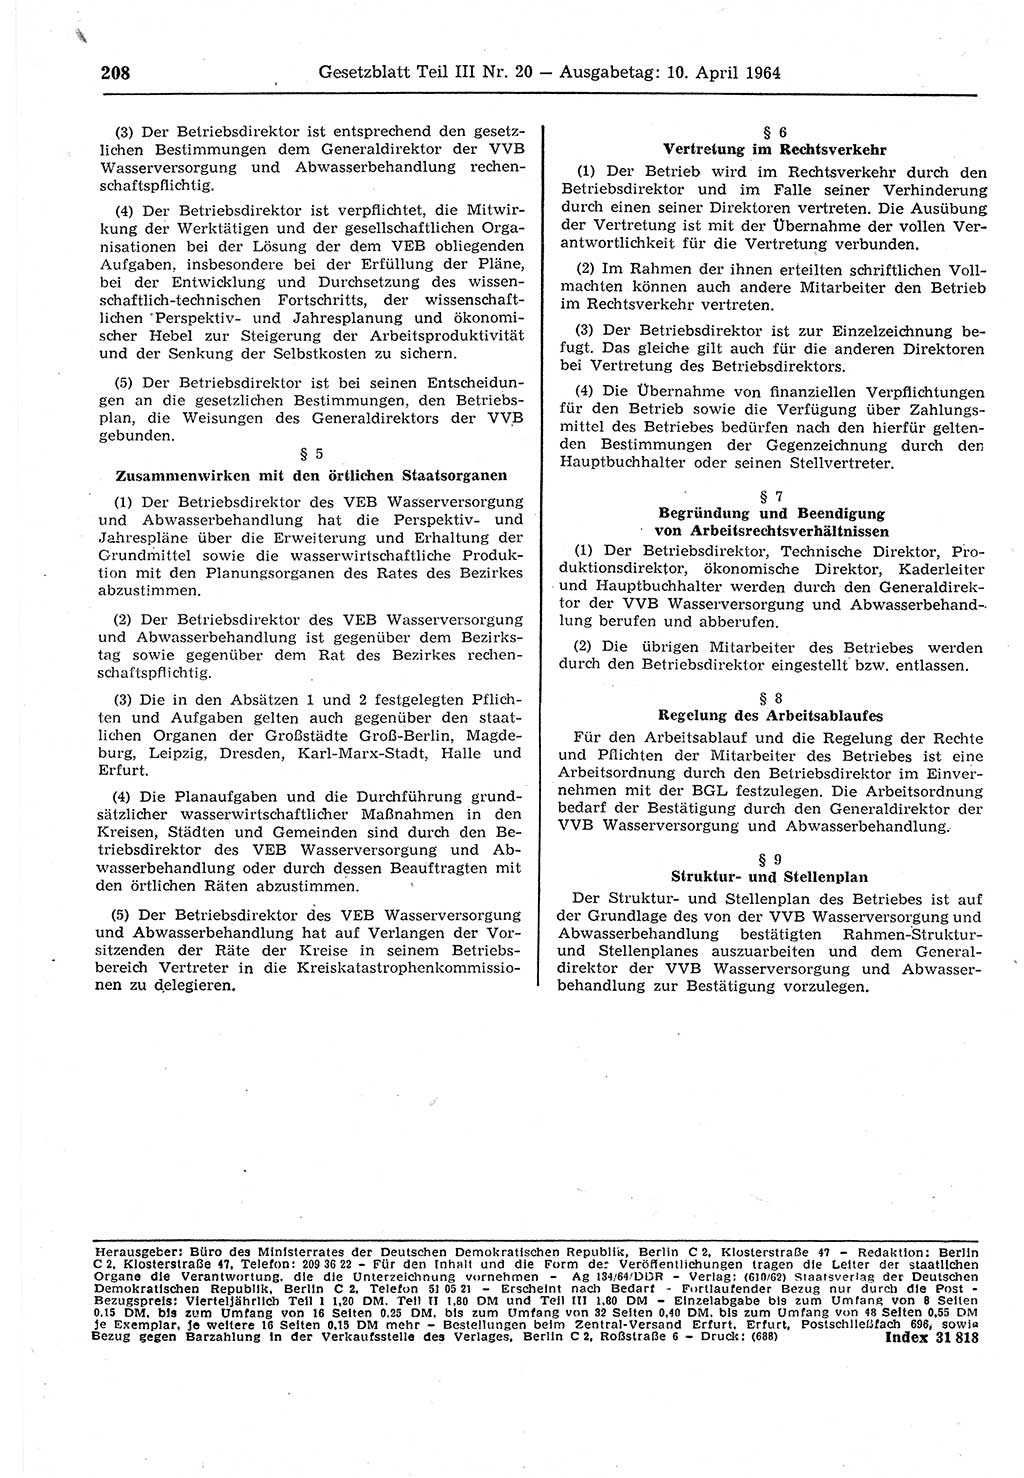 Gesetzblatt (GBl.) der Deutschen Demokratischen Republik (DDR) Teil ⅠⅠⅠ 1964, Seite 208 (GBl. DDR ⅠⅠⅠ 1964, S. 208)